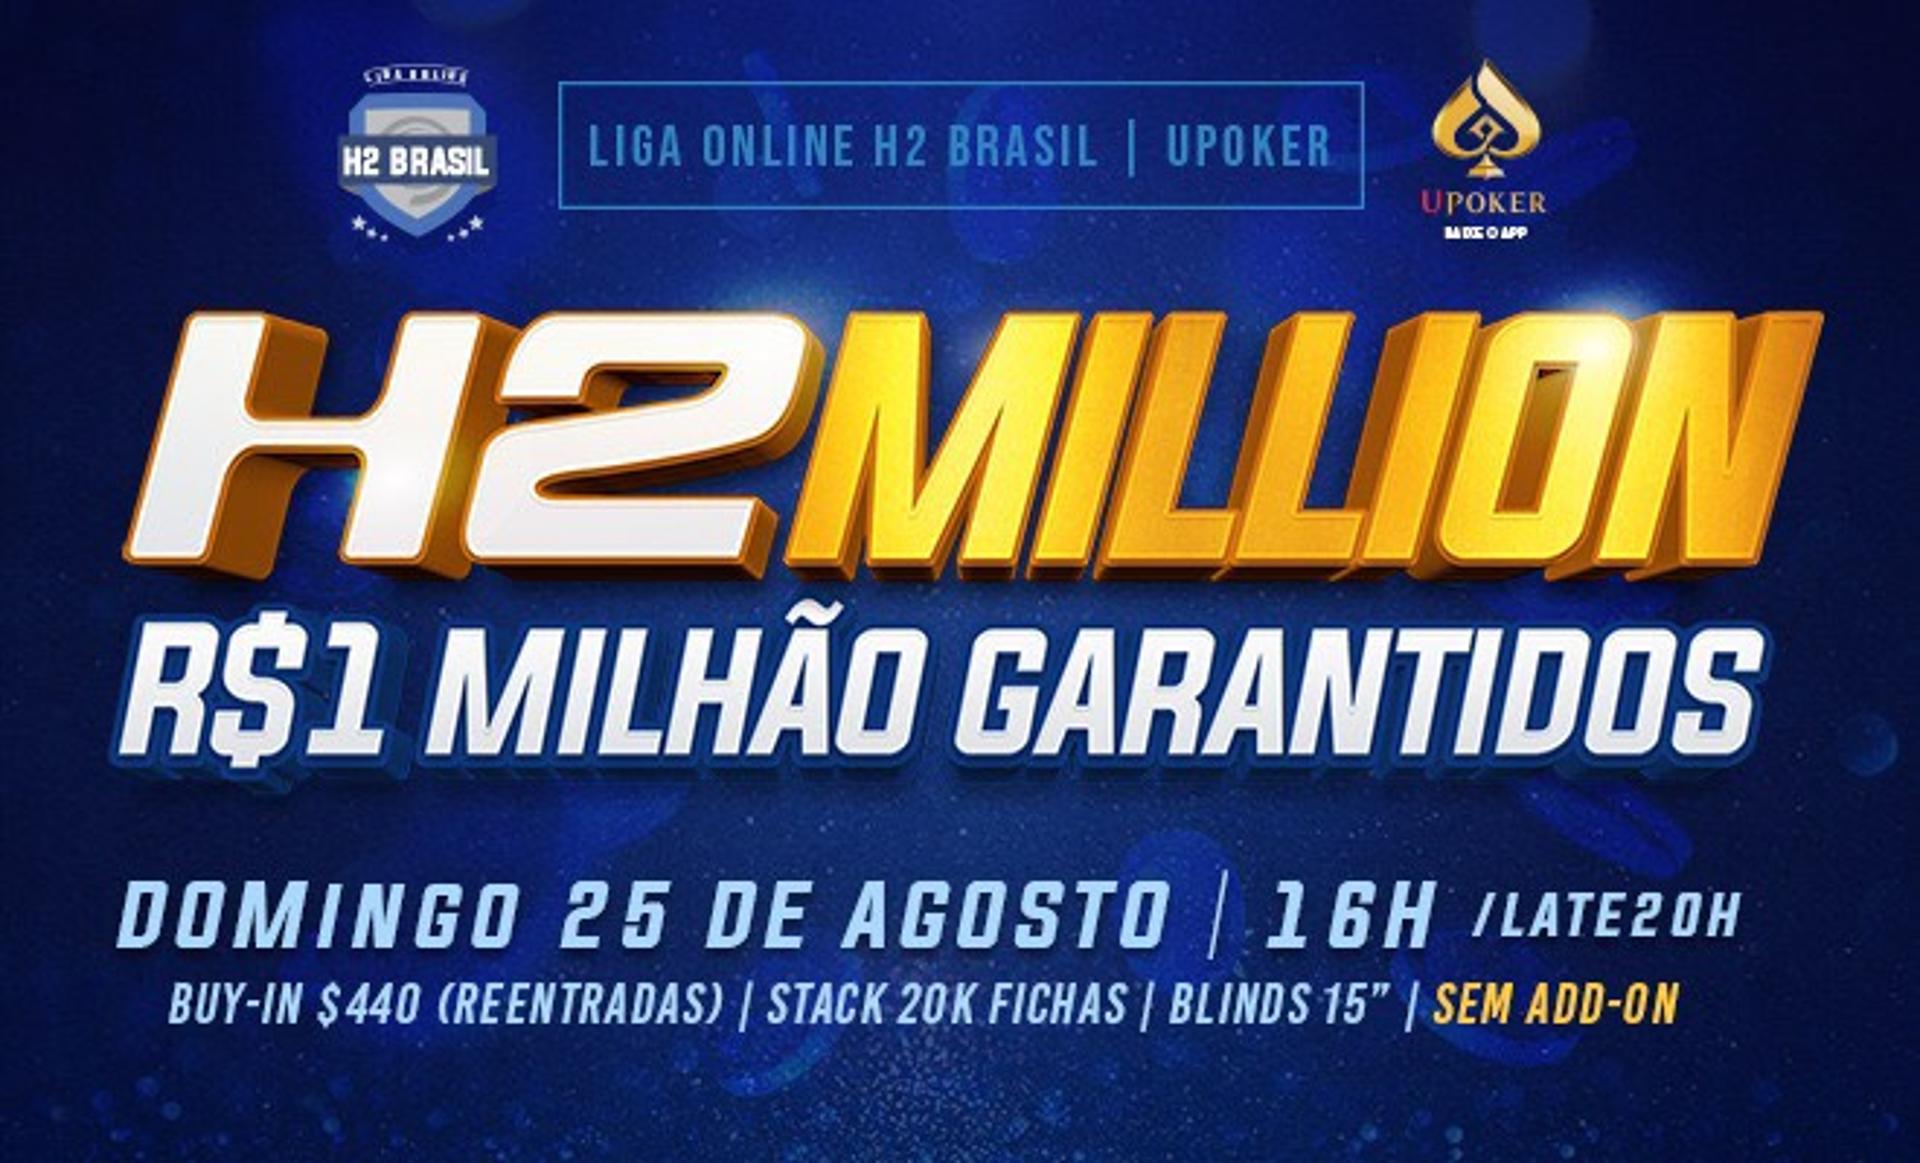 Liga Online Million